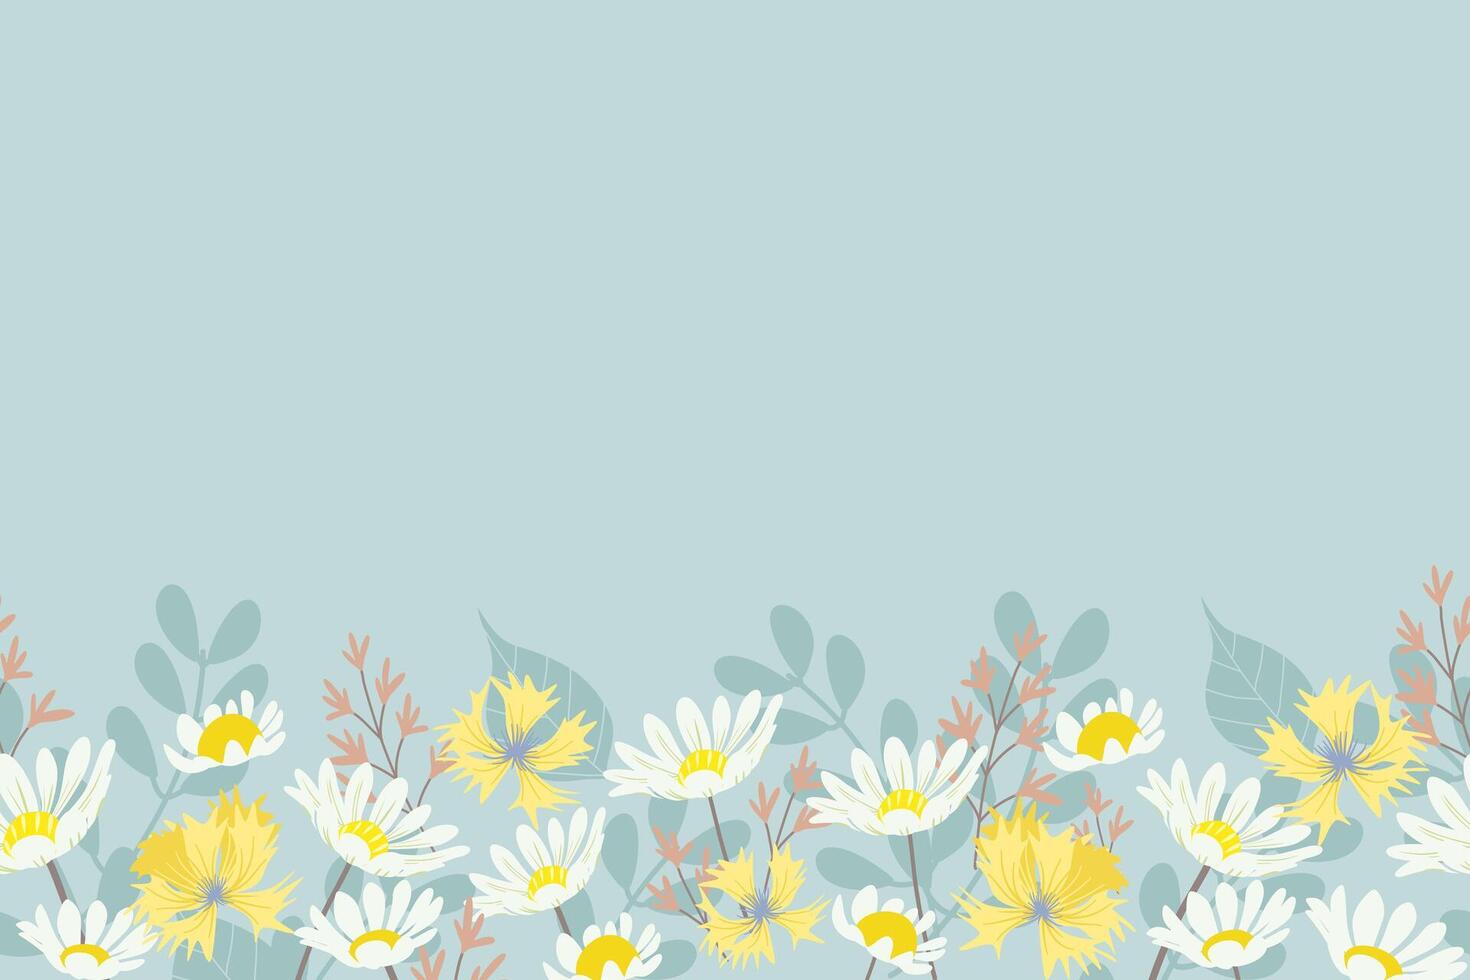 fiore e foglia sfondi confine telaio bianca margherita fiordaliso prati design. vettore illustrazione. primavera estate sfondo.